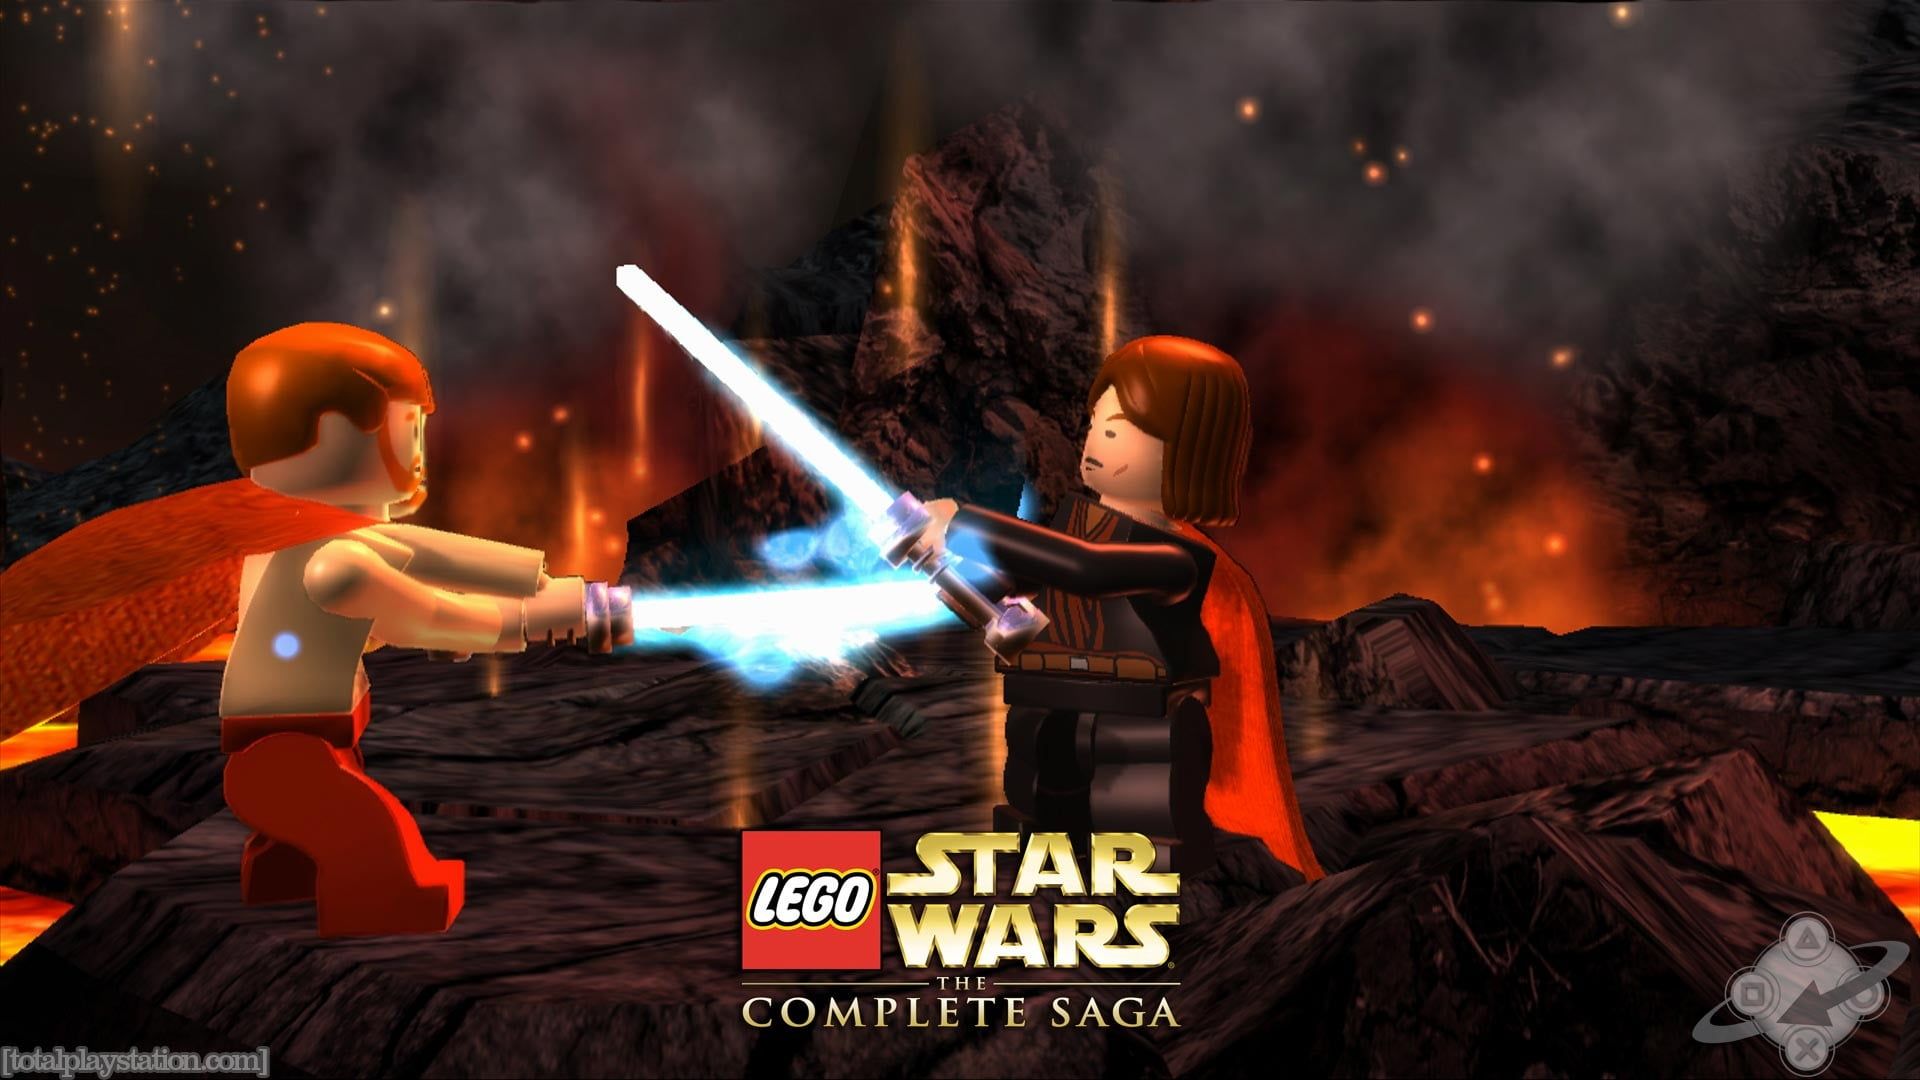 LEGO Star Wars Complete saga, Star Wars, LEGO, LEGO Star Wars